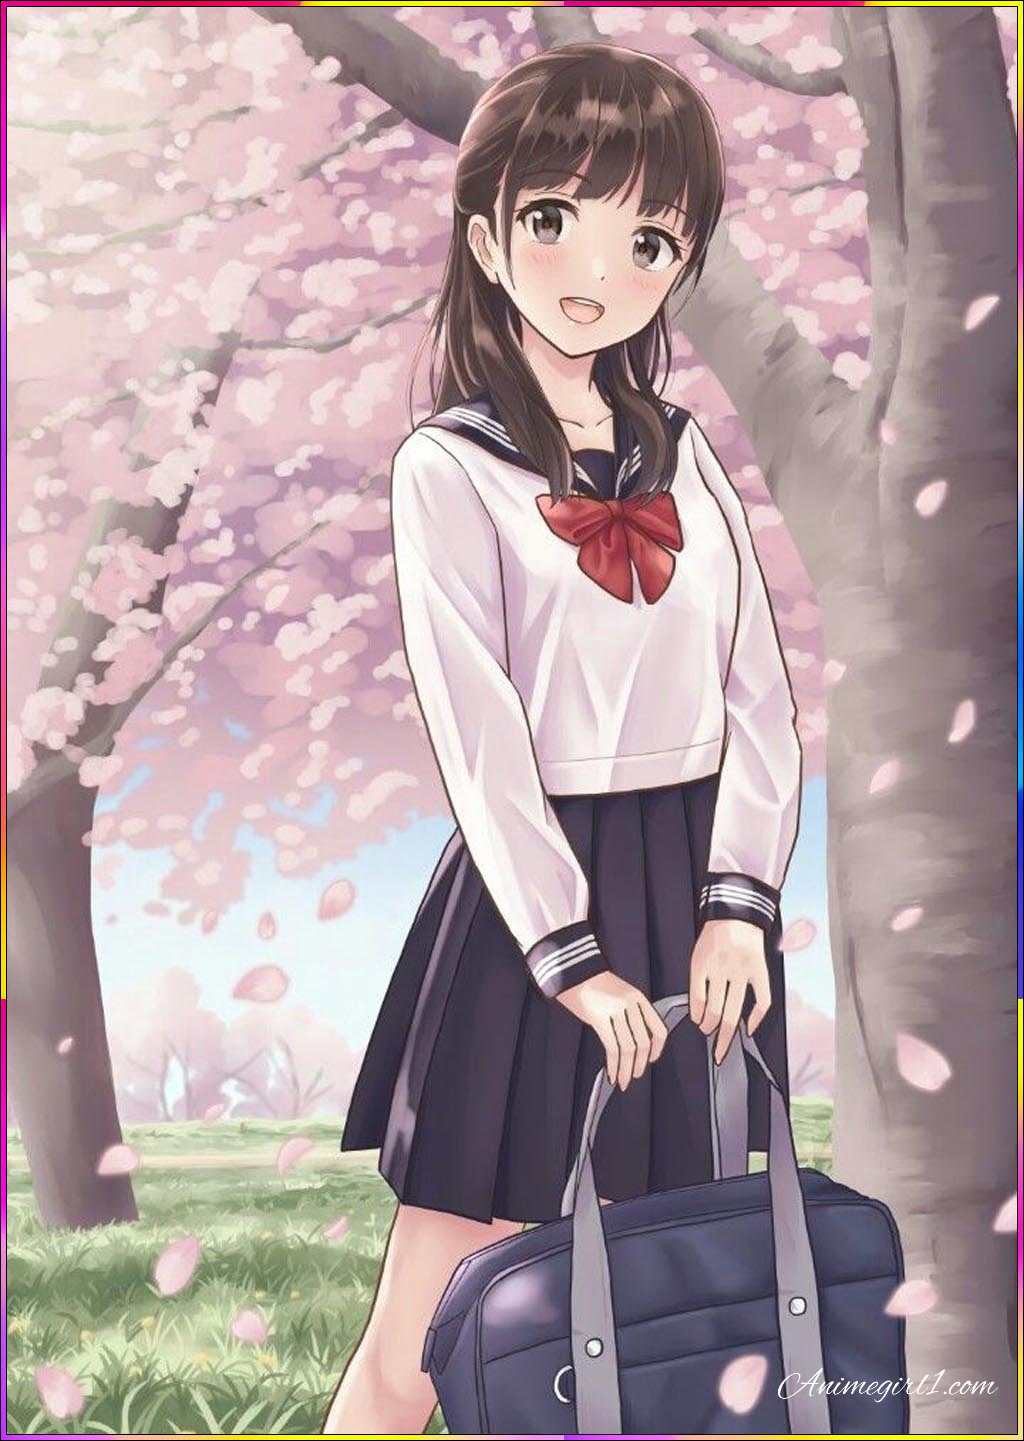 anime girl with school bag